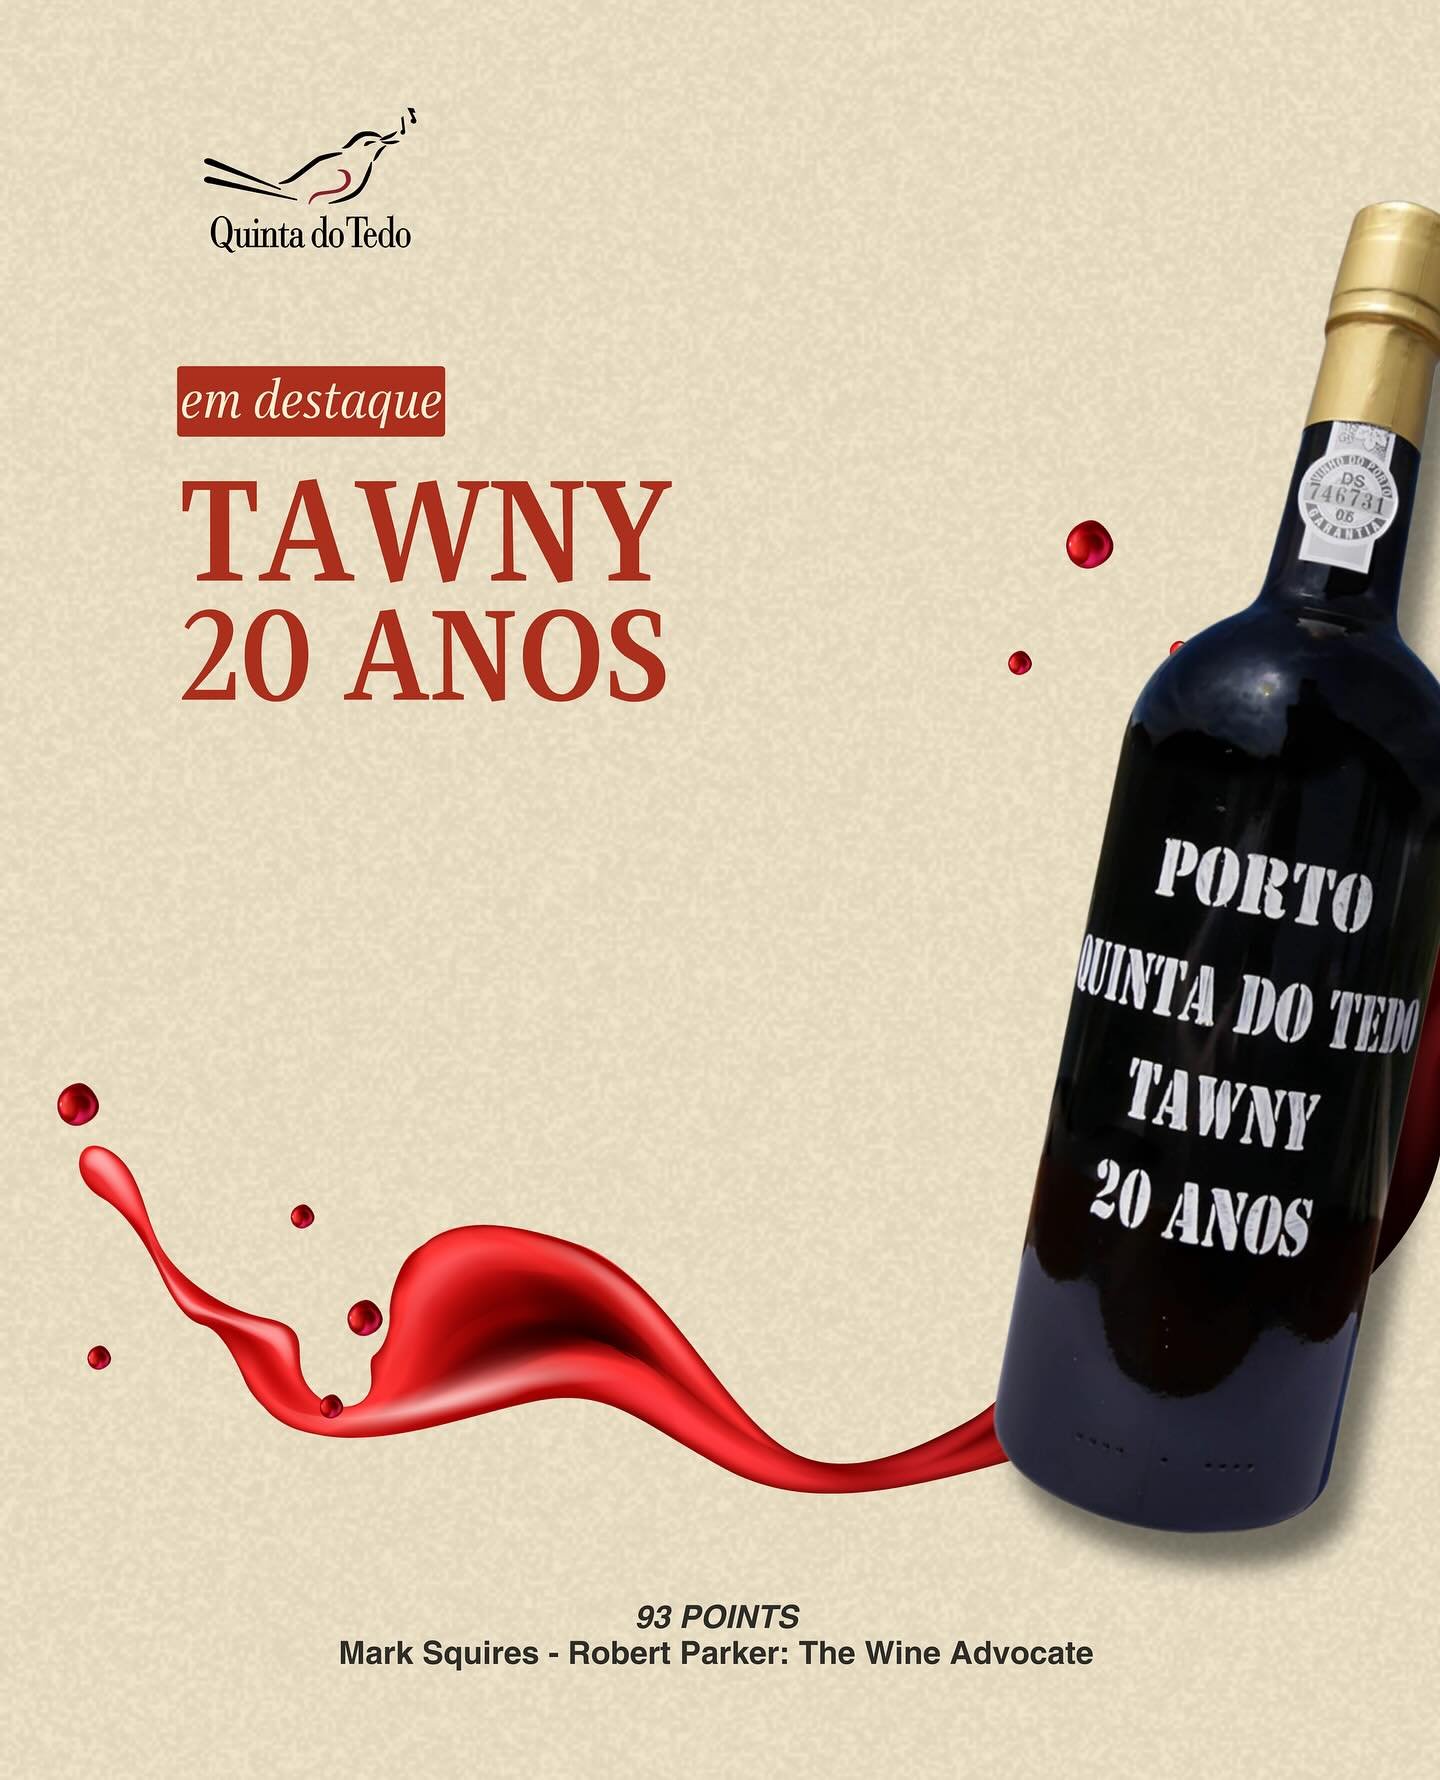 ᴘᴛ 𝗠𝗮𝘀𝘁𝗲𝗿𝗰𝗹𝗮𝘀𝘀 𝗣𝗼𝗿𝘁𝗼 𝗧𝗮𝘄𝗻𝘆 𝟮𝟬 𝗔𝗻𝗼𝘀 | Port Wine Experience

O nosso Porto Tawny 20 Anos vai estar em destaque no Port Wine Experience, no pr&oacute;ximo s&aacute;bado.
A prova deste vinho vai decorrer num formato de mastercl